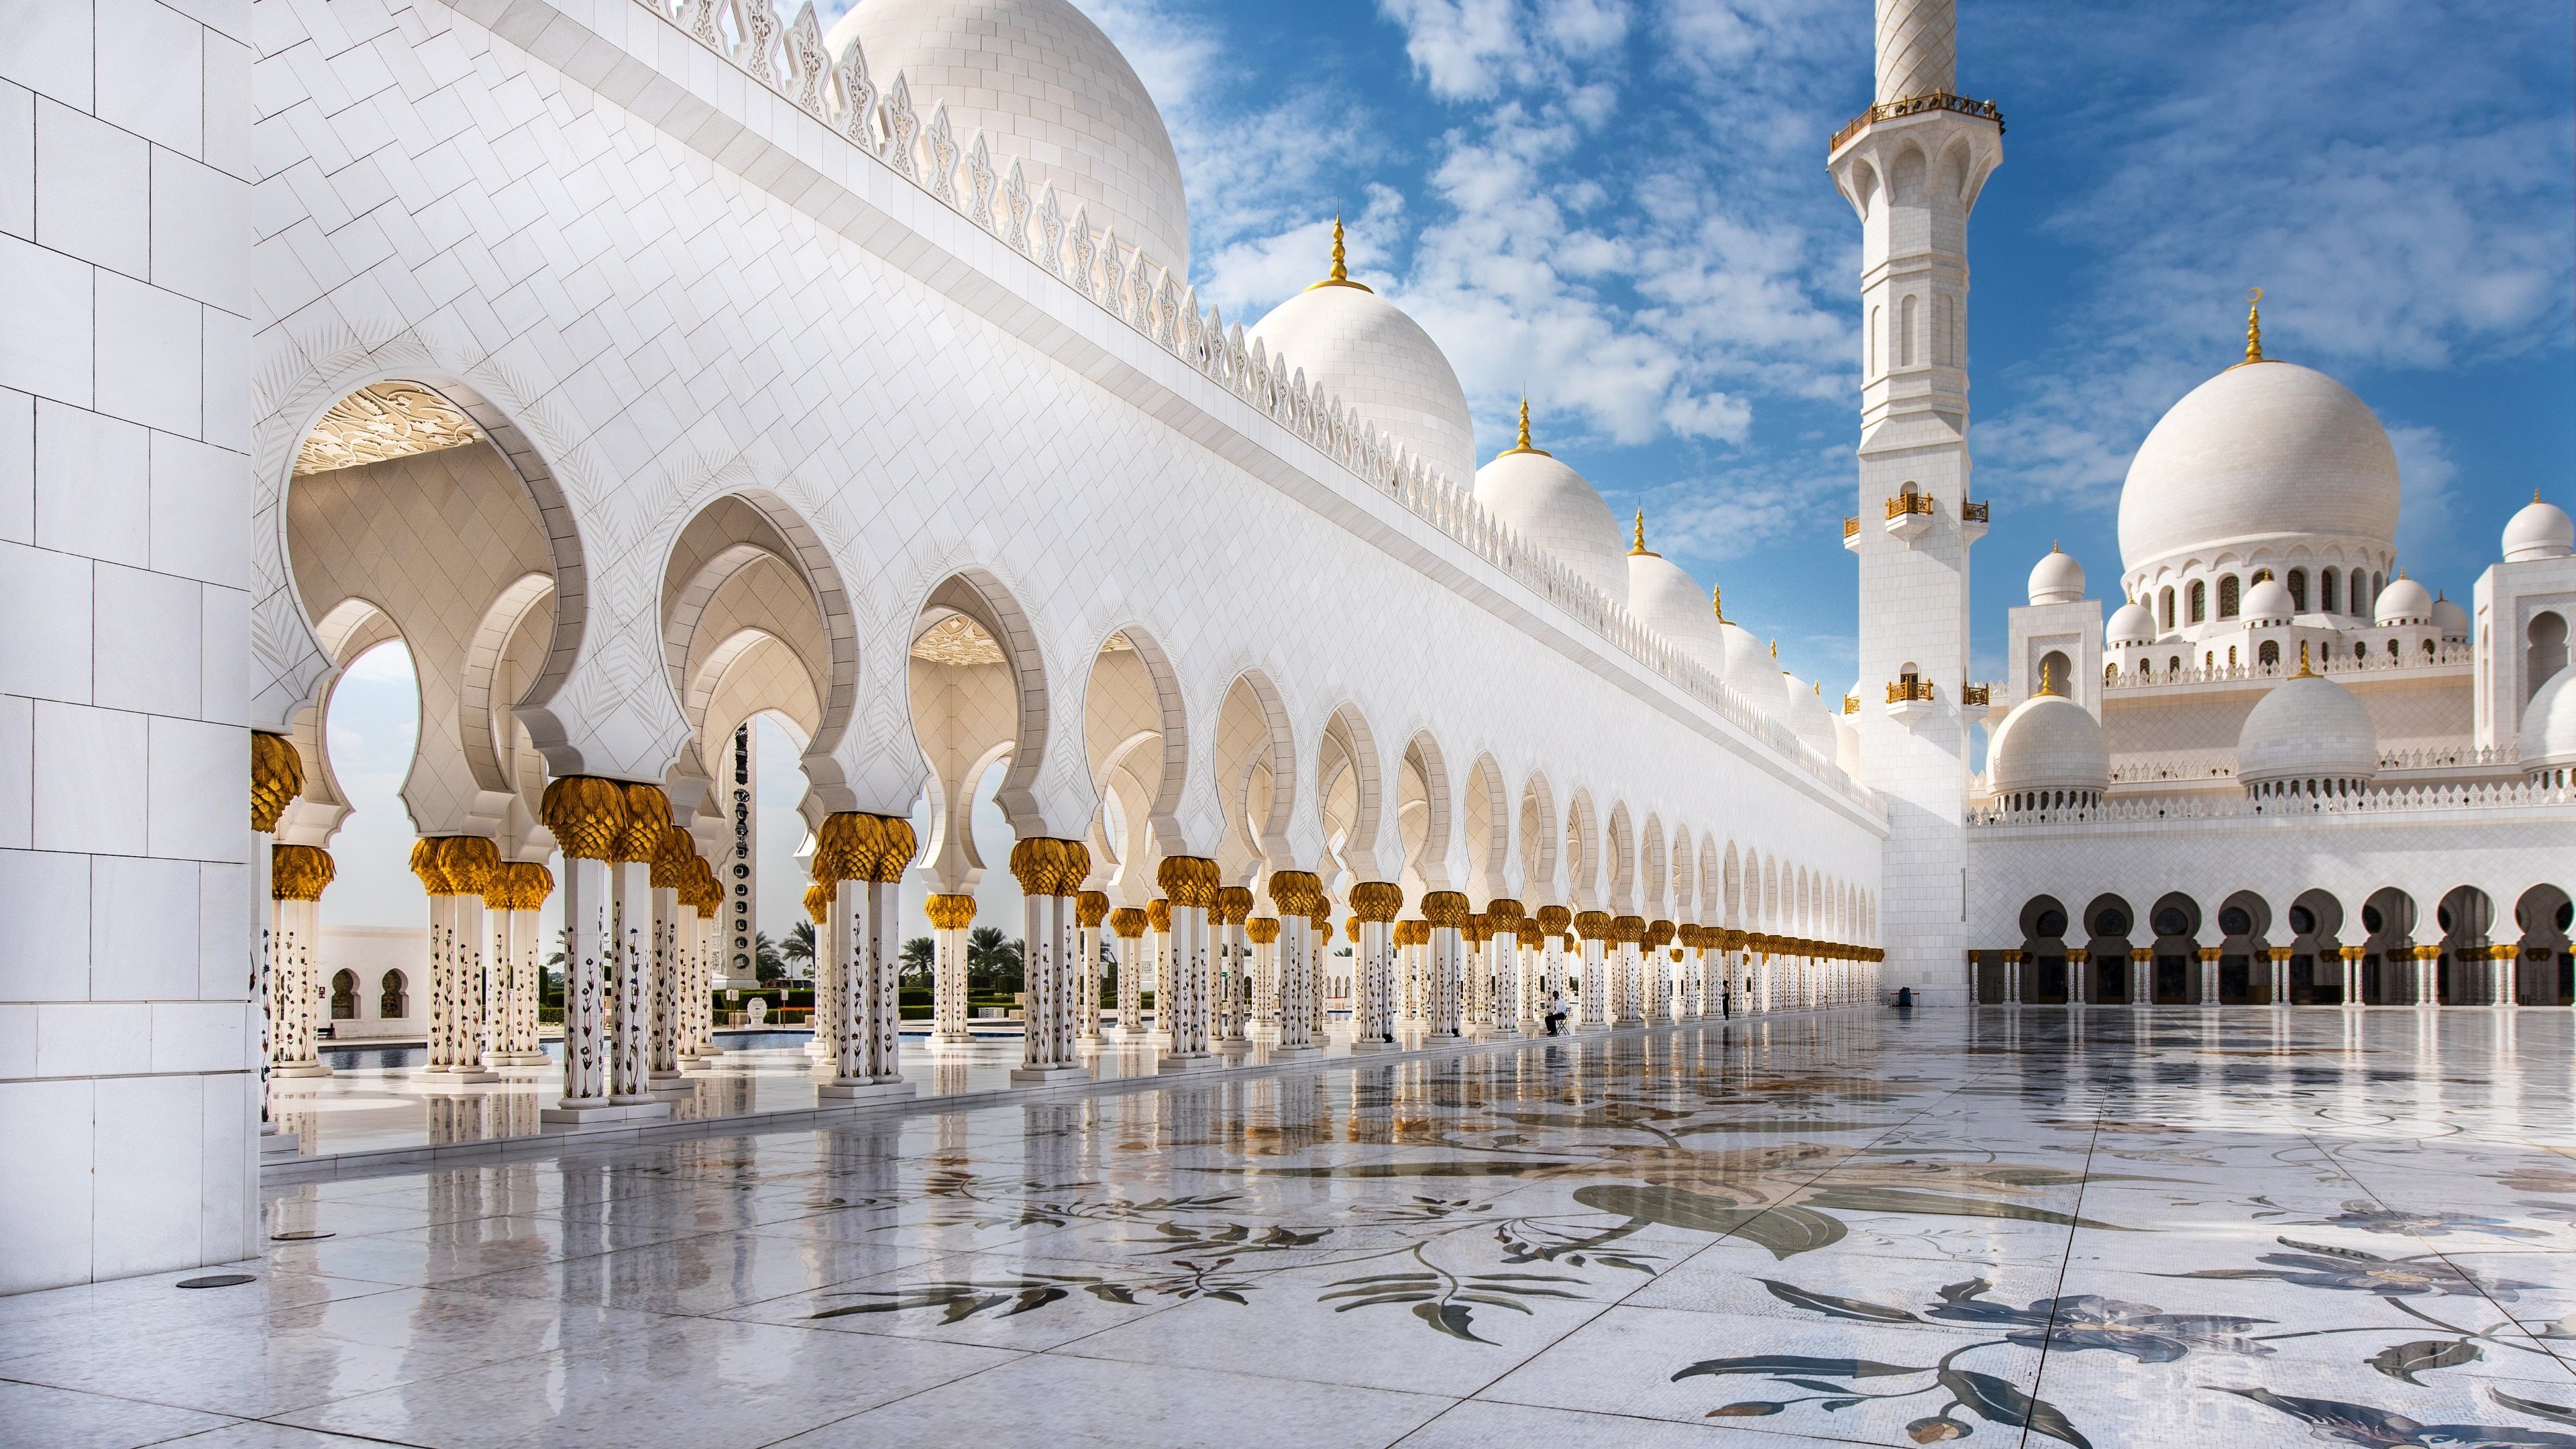 мечеть в абу даби самый большой